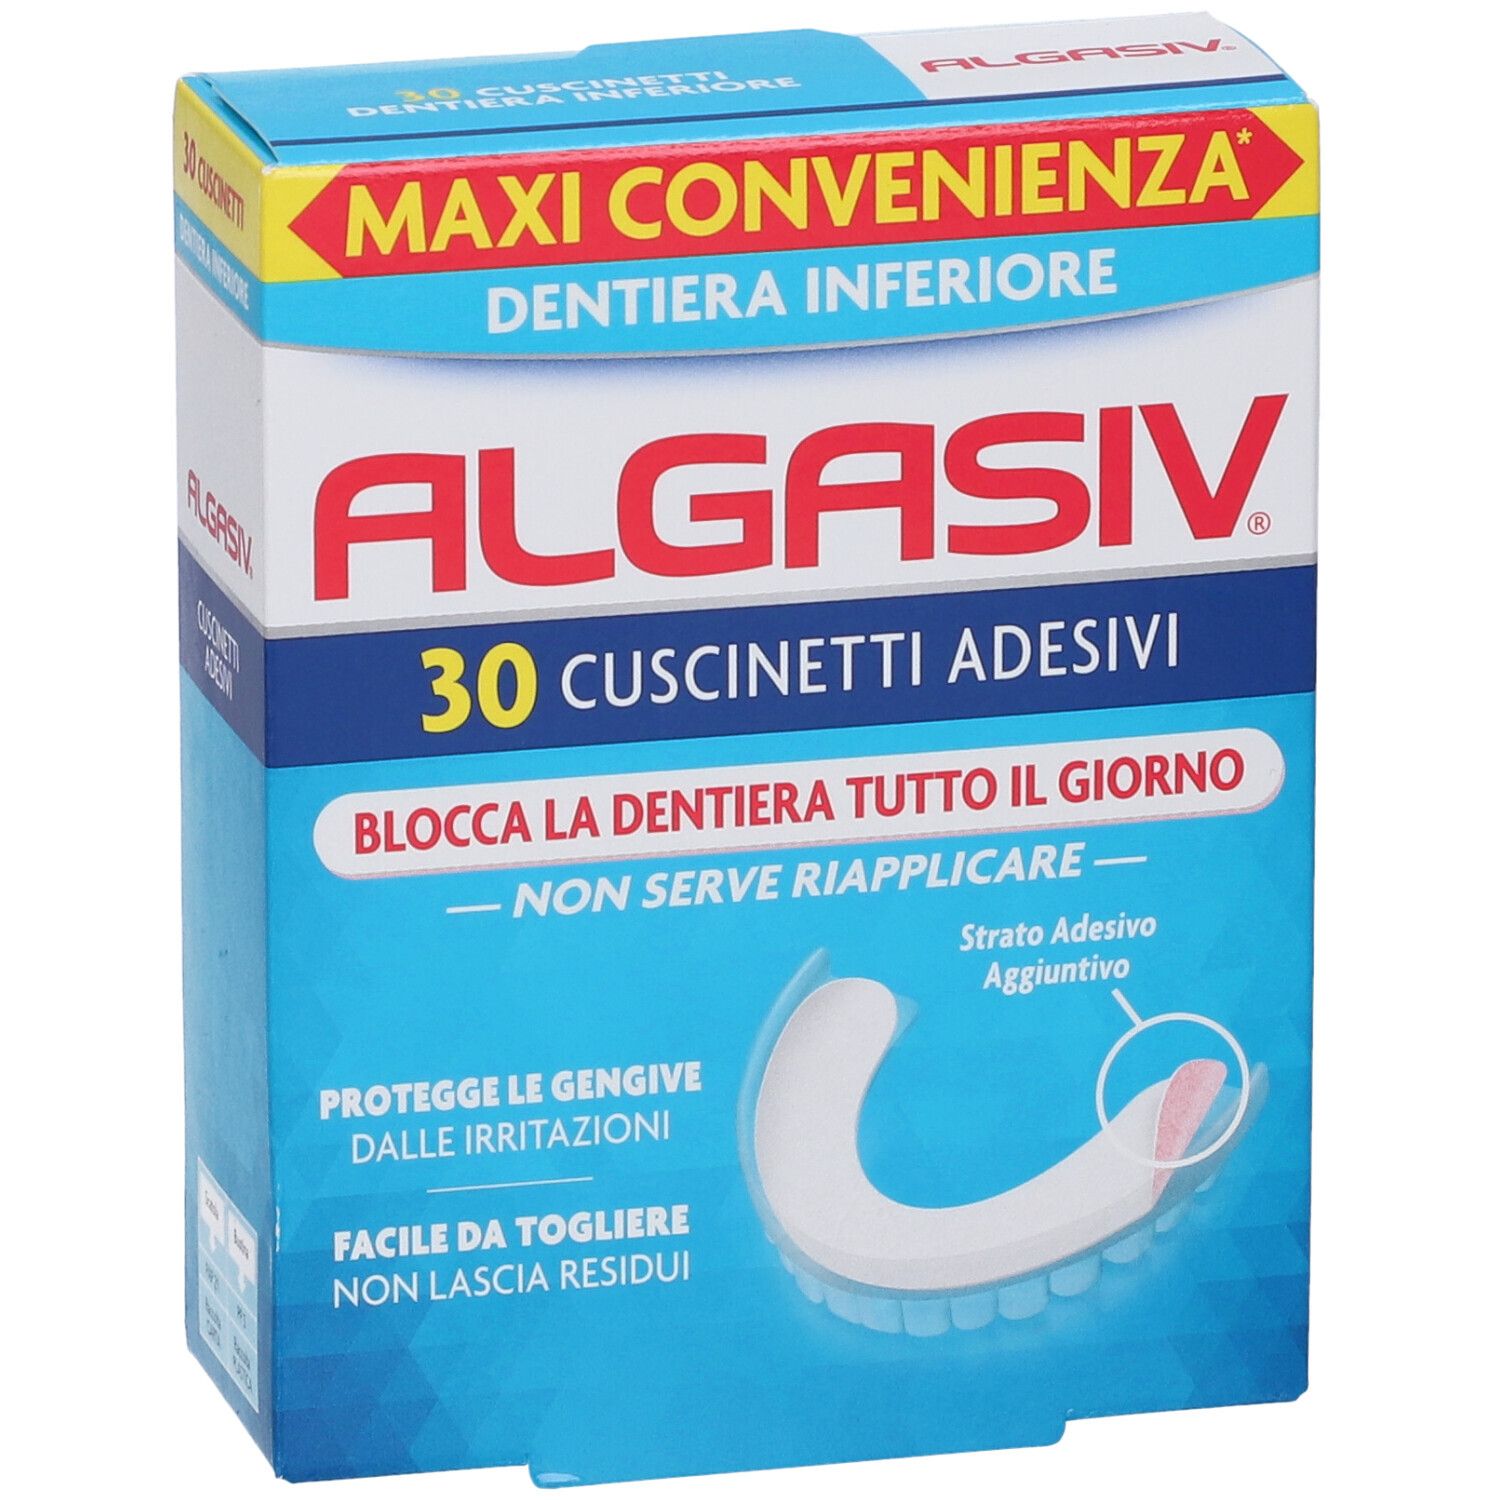 ALGASIV® Cuscinetti Adesivi Dentiera Inferiore